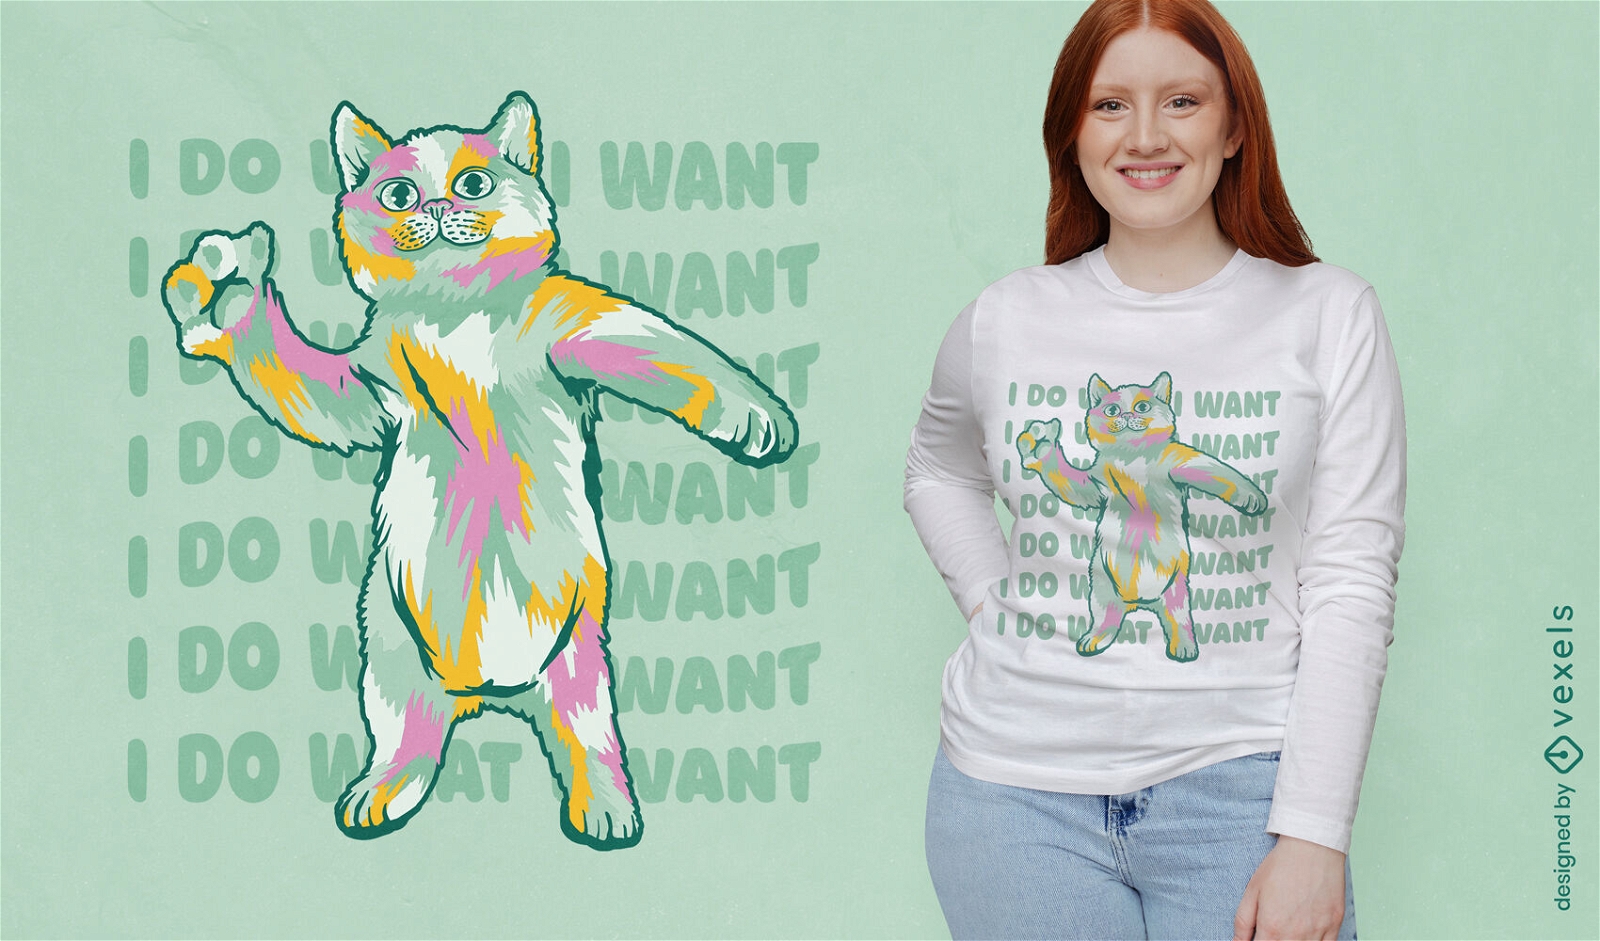 Colorful cat dancing t-shirt design